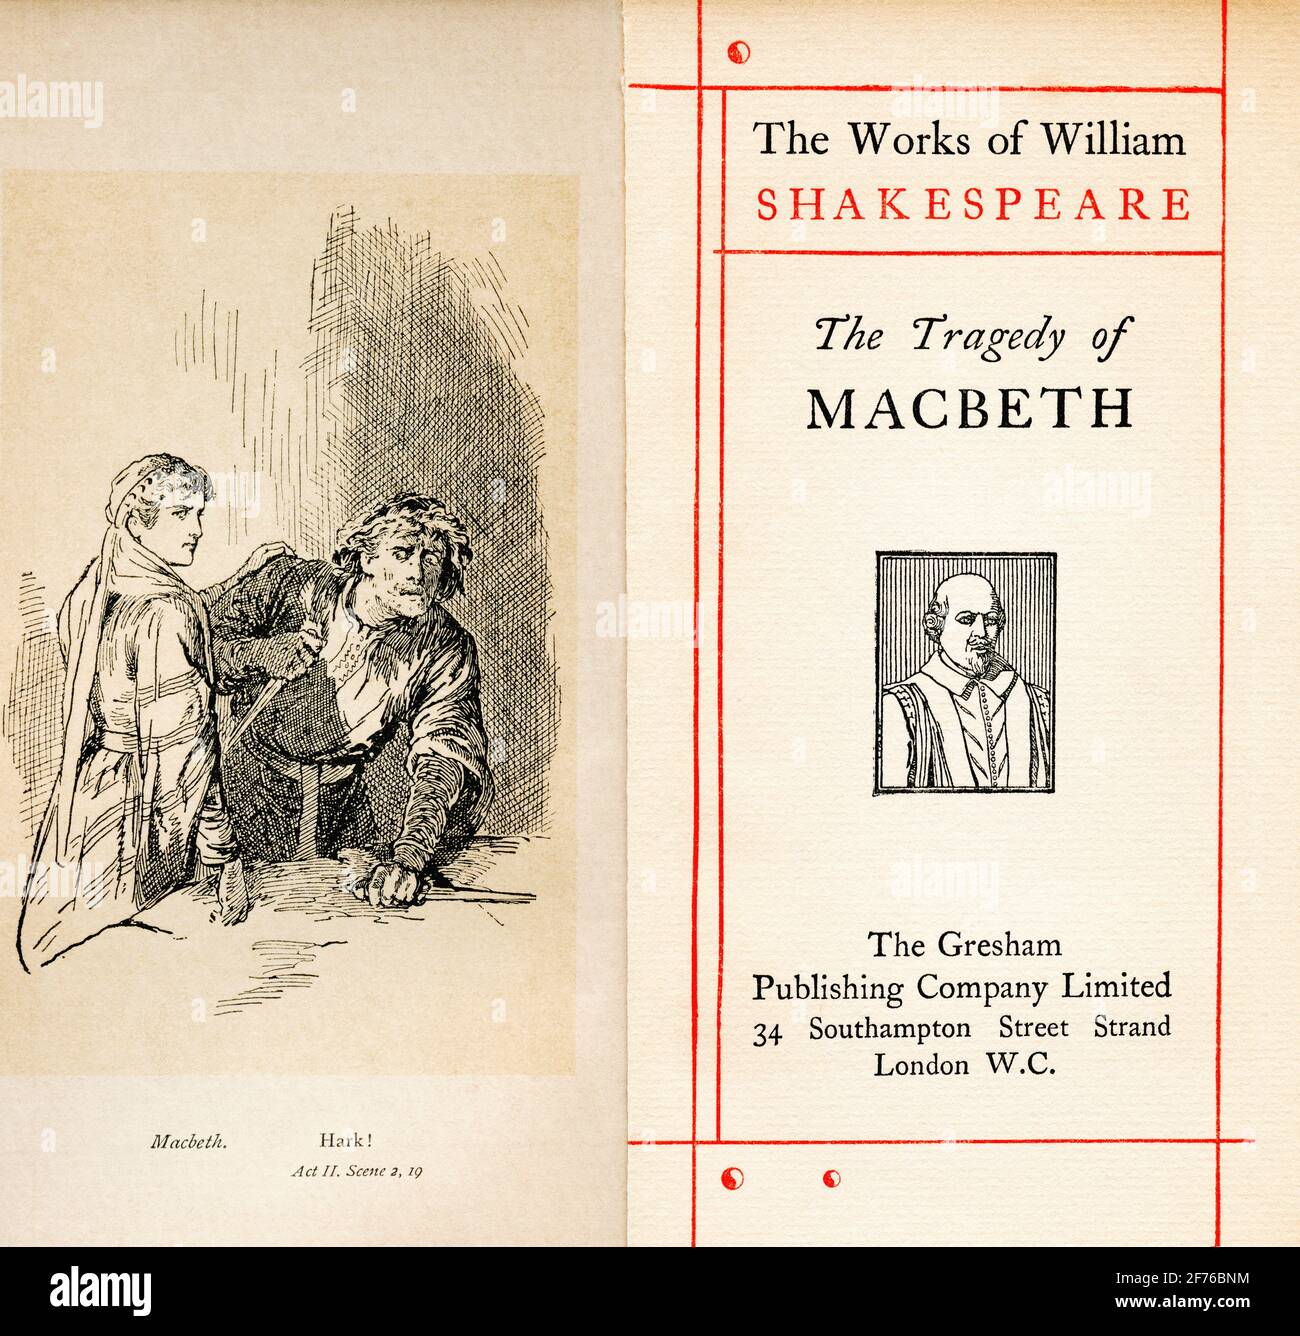 Frontispice et page de titre de la pièce de Shakespeare Macbeth. Act II, scène 2. Macbeth, « Hark! '. Des œuvres de William Shakespeare, publié vers 1900 Banque D'Images